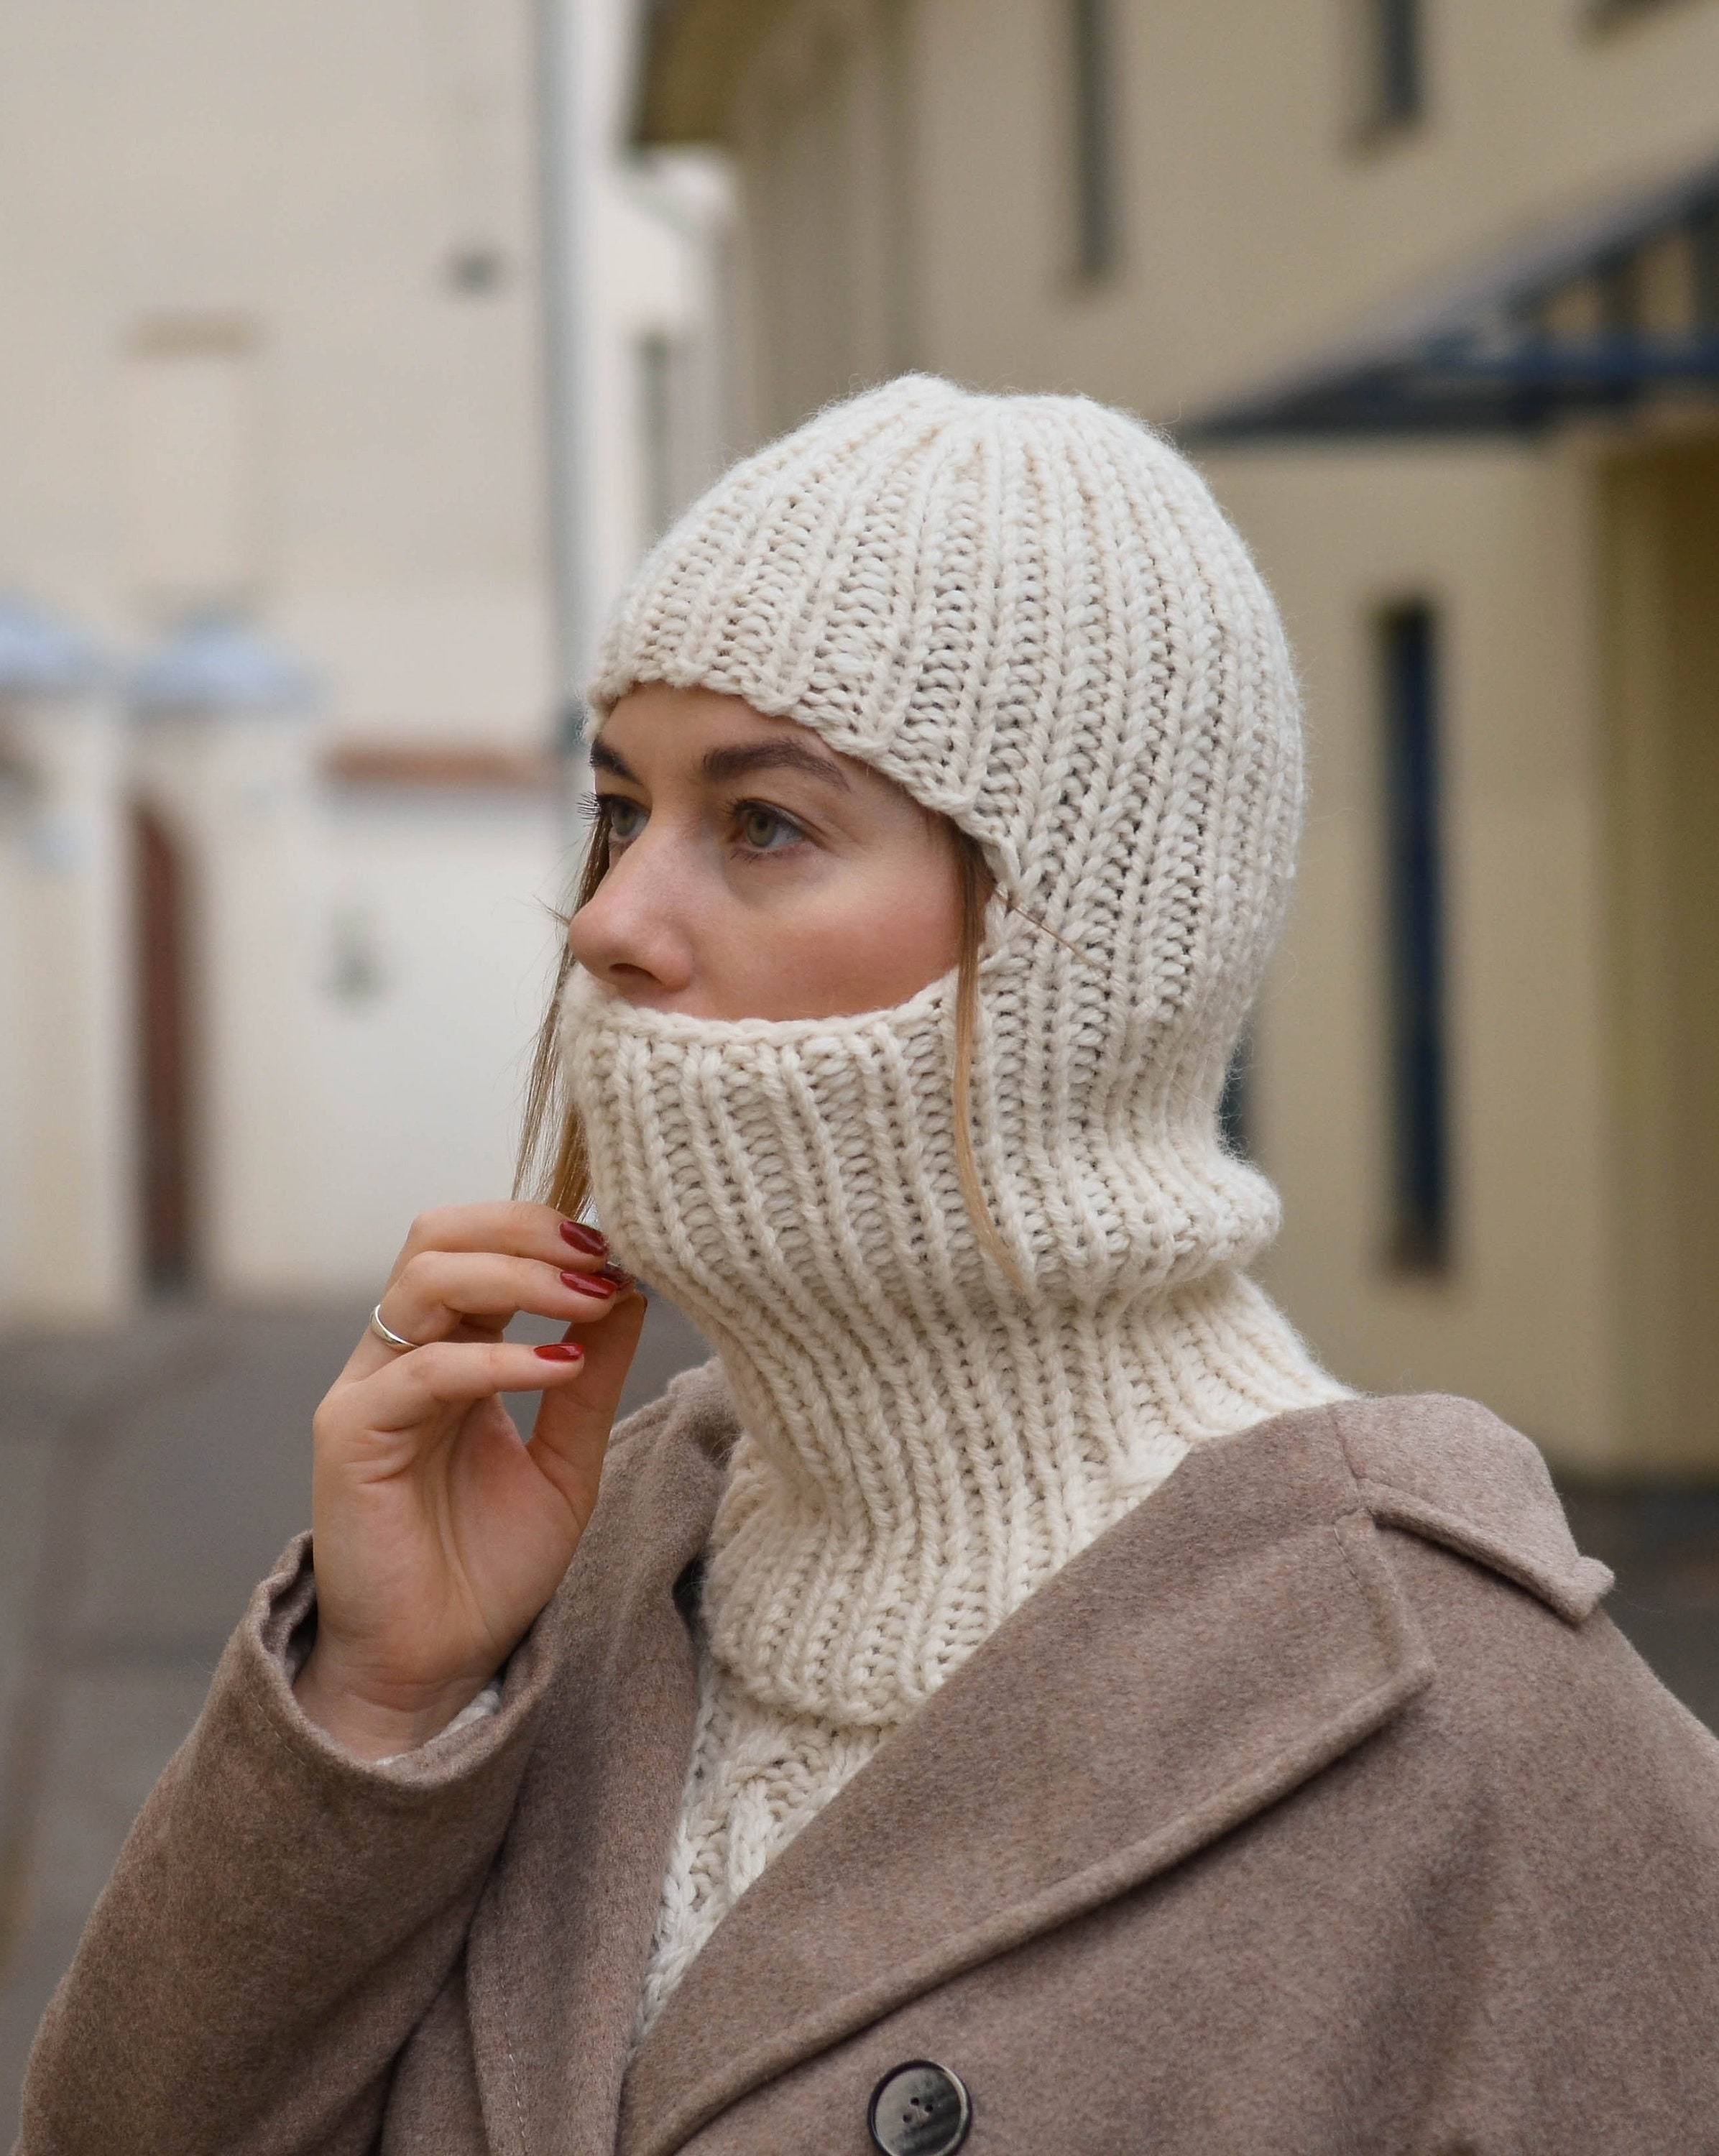 Bonnet cagoule brodé en tricot pour femme, bonnet en laine, chaud